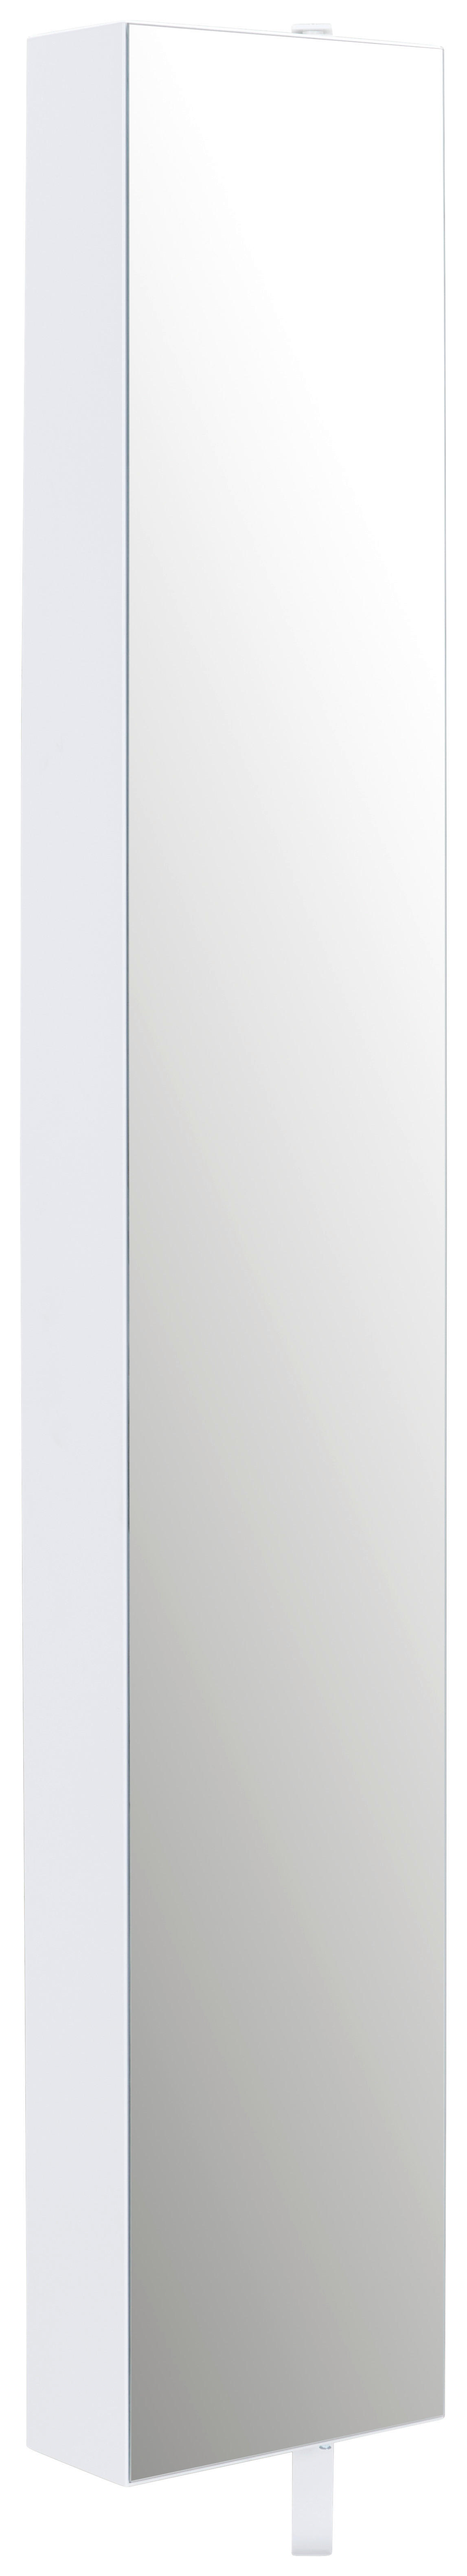 SCHUHSCHRANK 29/176/16 cm  - Silberfarben/Weiß, Design, Glas/Metall (29/176/16cm) - MID.YOU